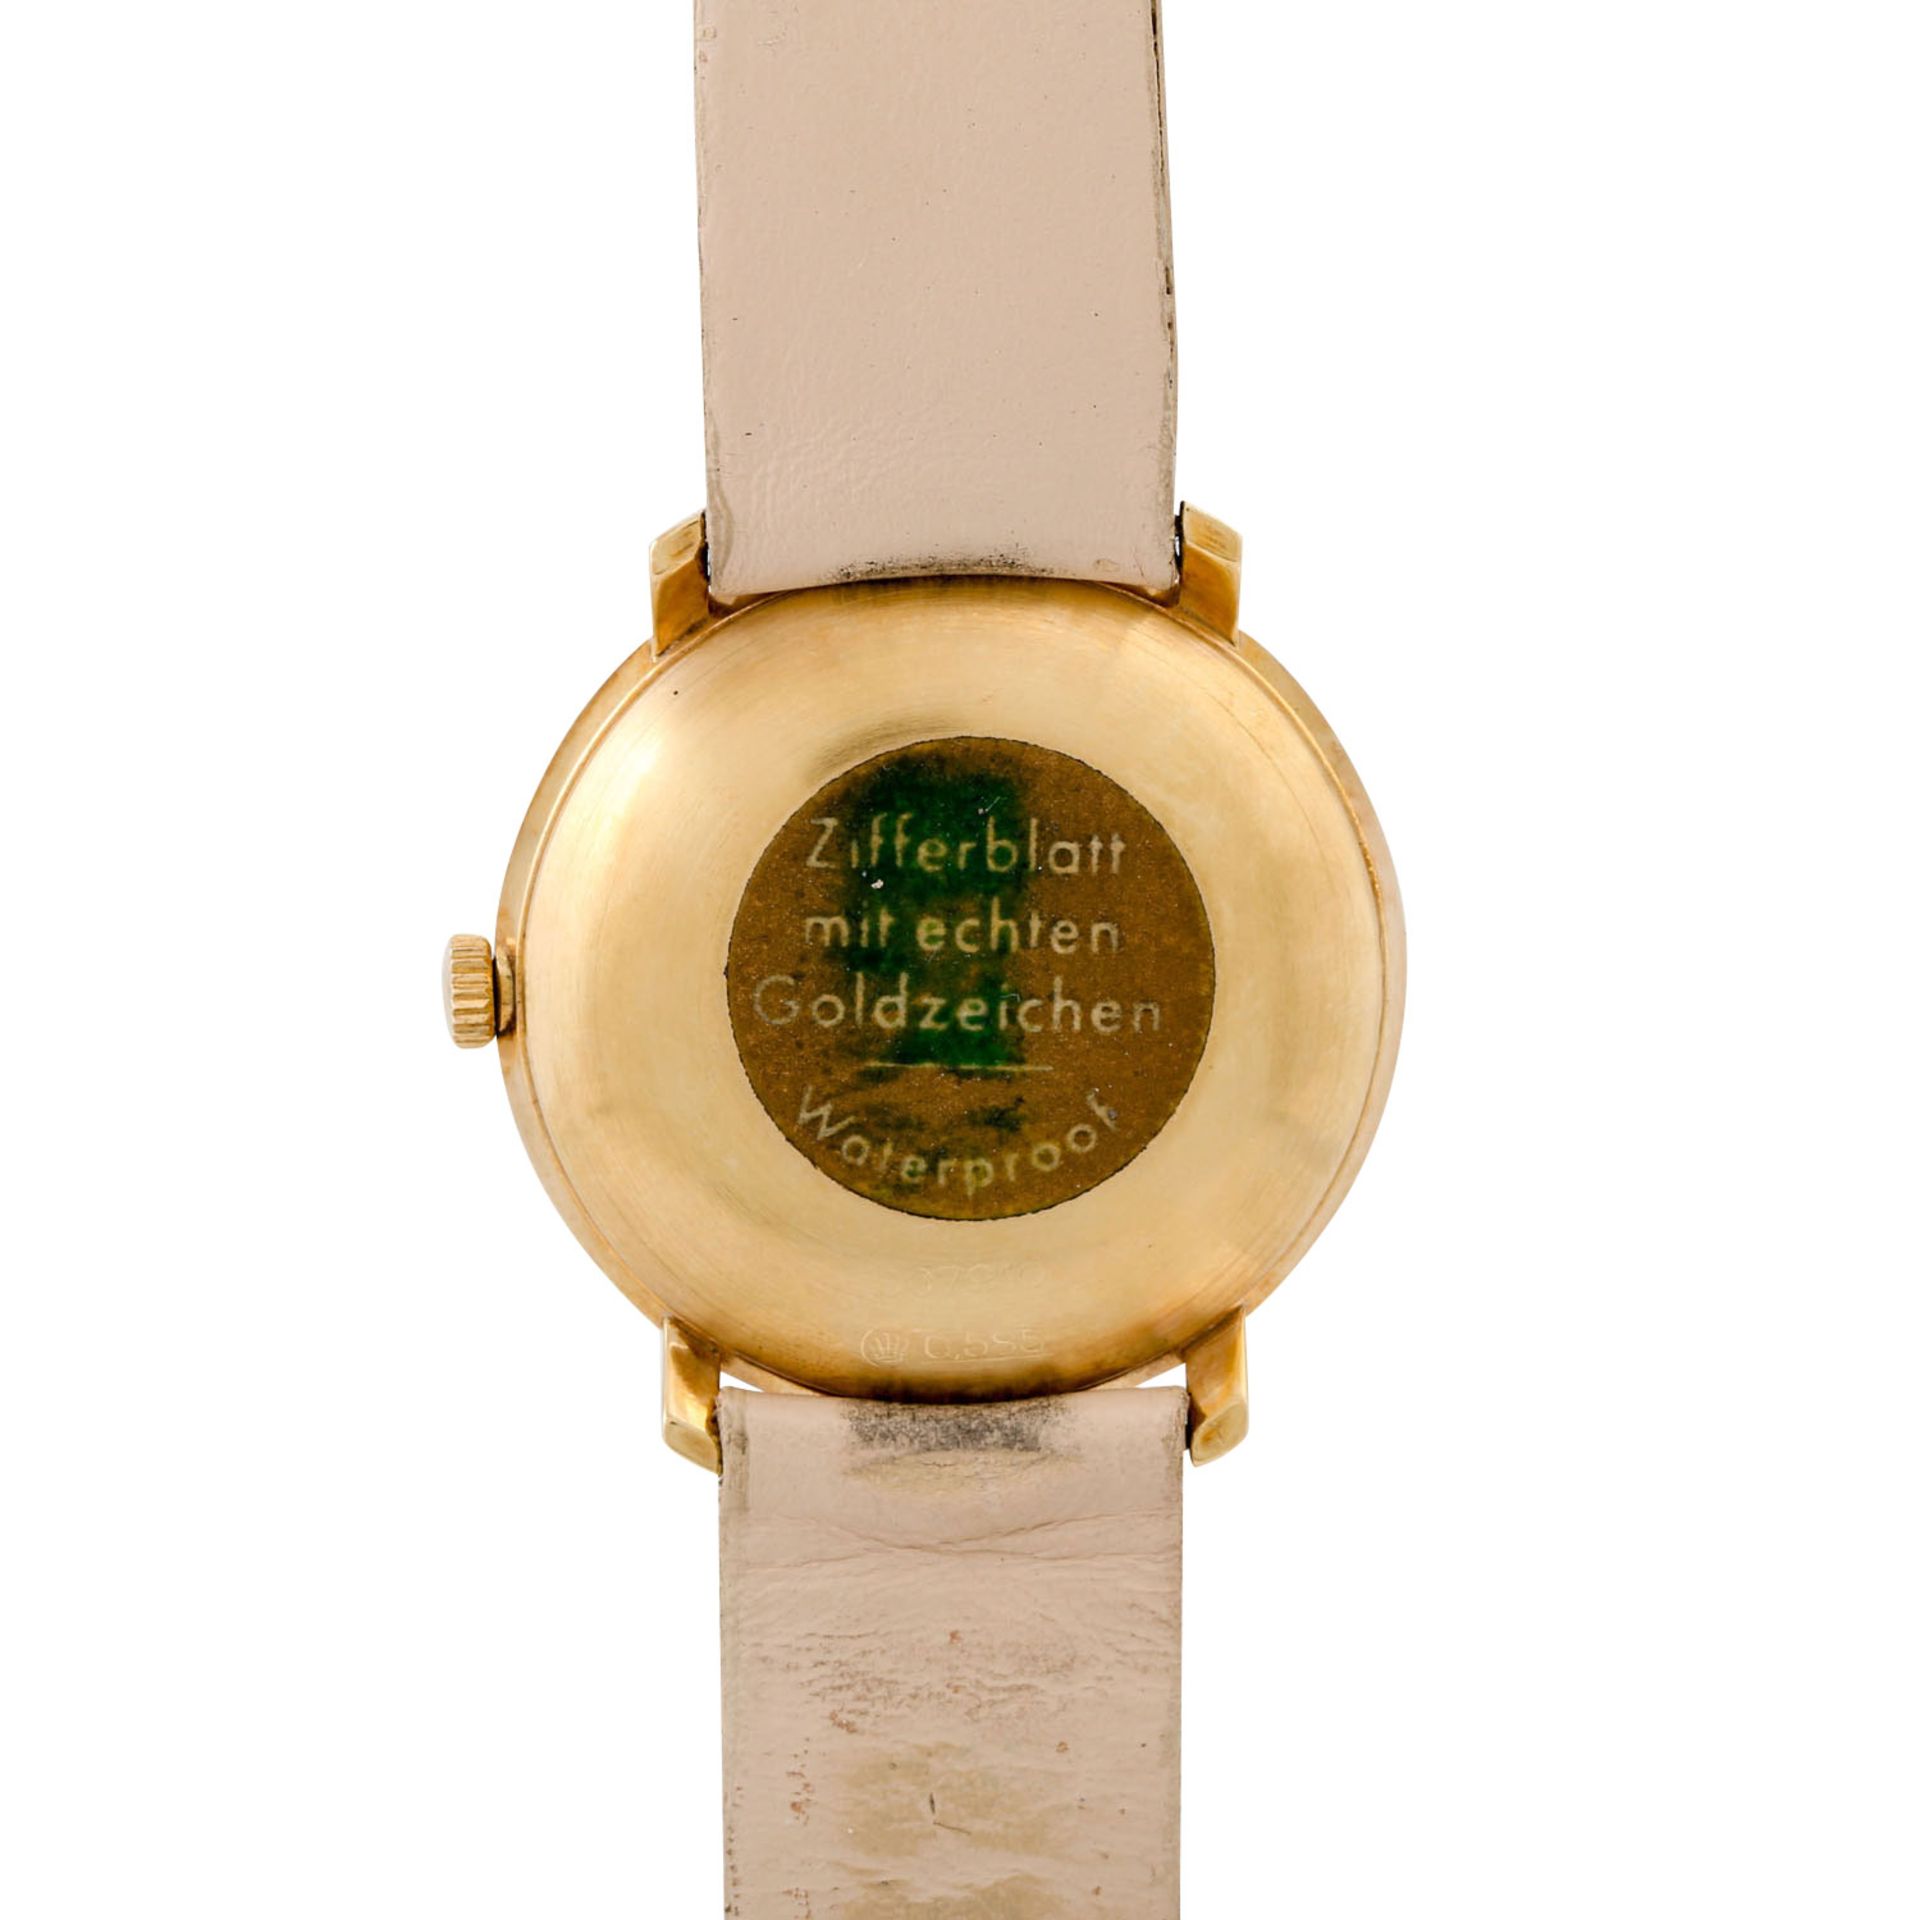 JUNGHANS Vintage Chronometer Herren Armbanduhr. Full Set, ungetragen. Ca. 1960er Jahre. - Image 2 of 7